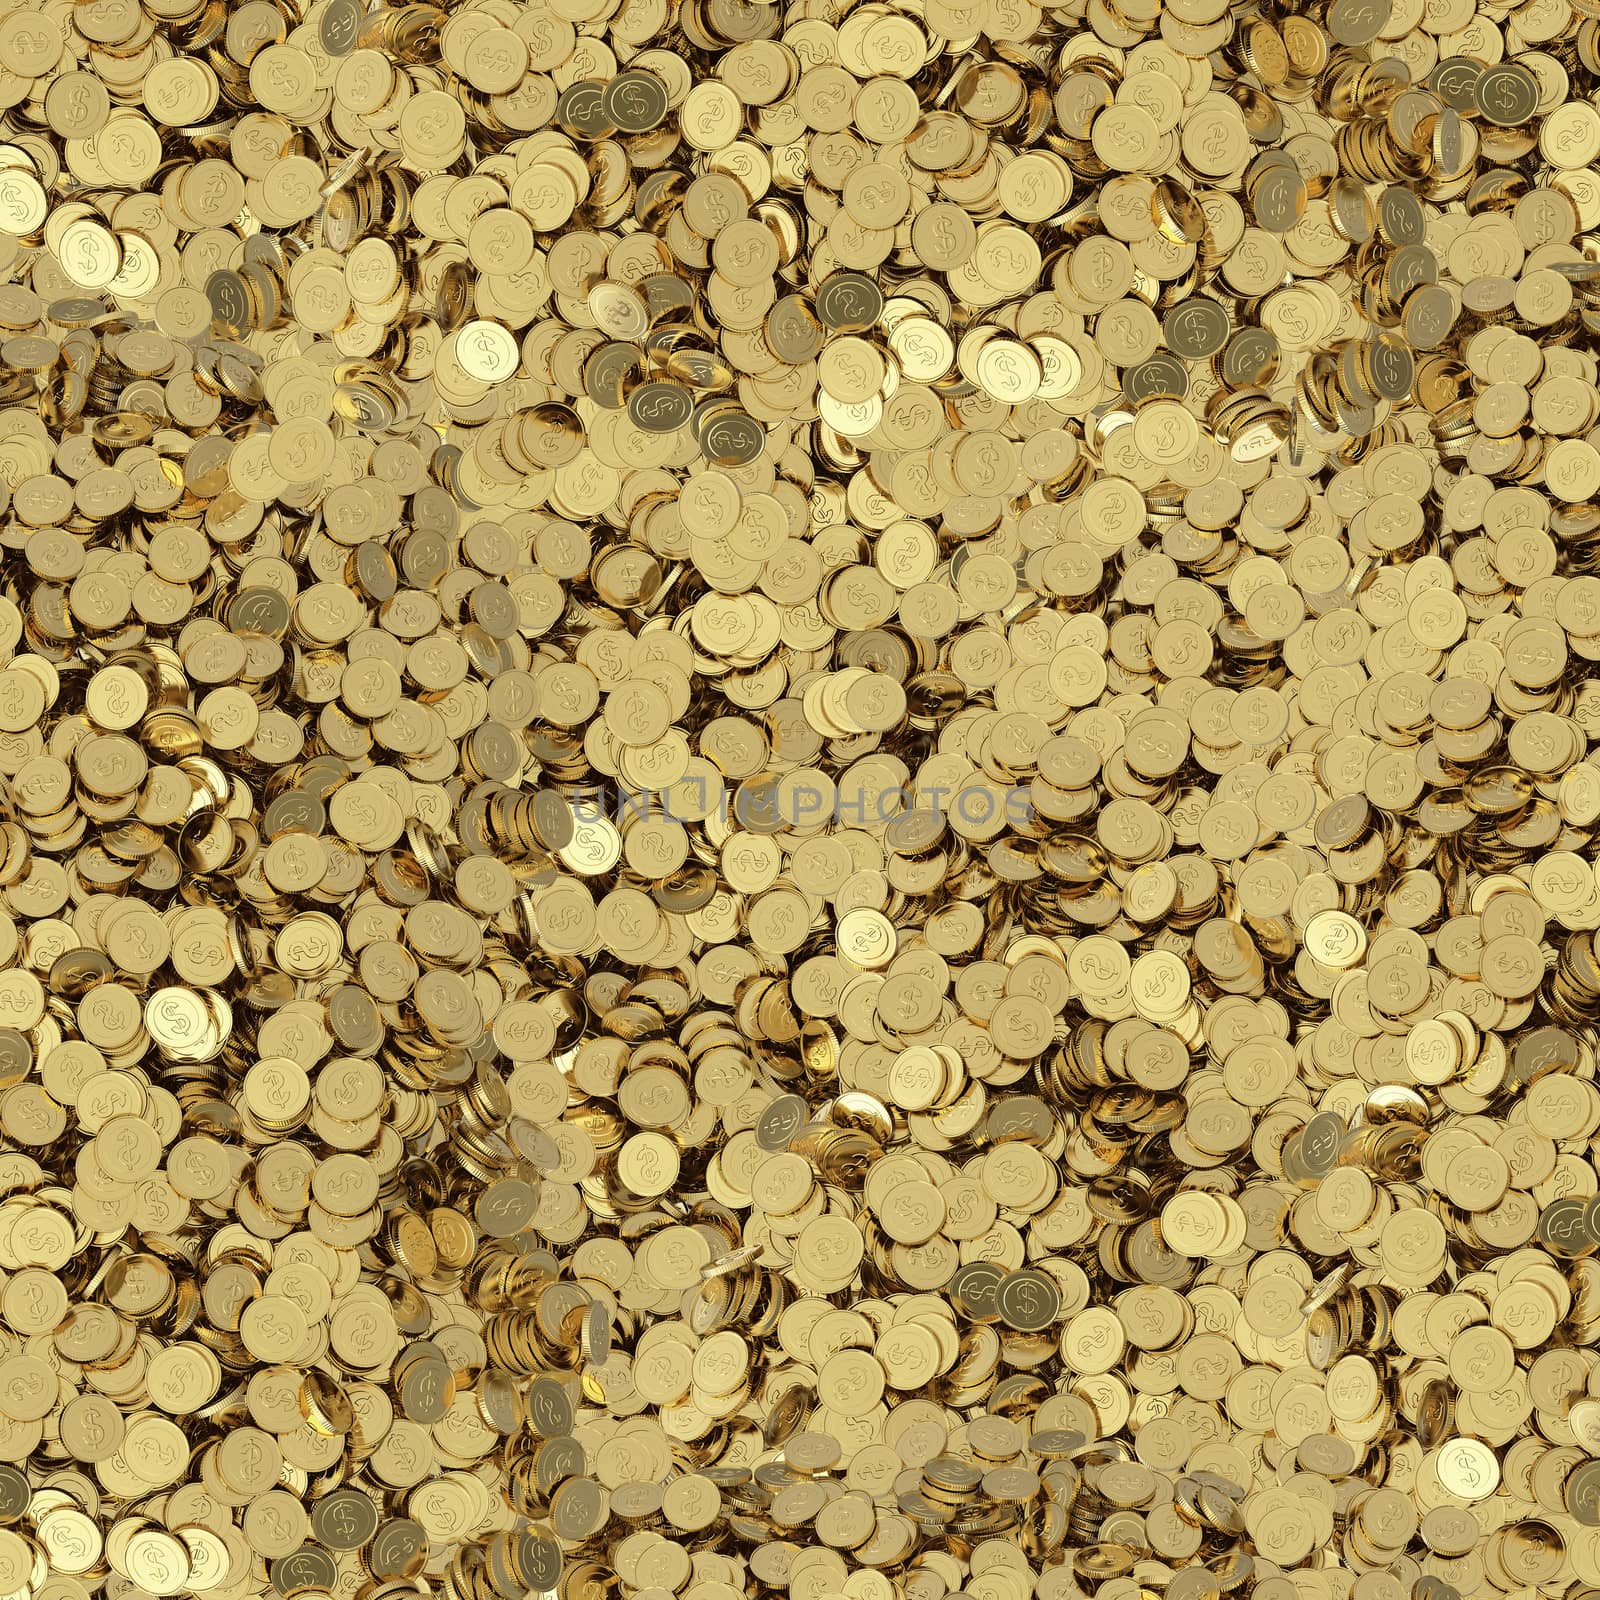 golden coins background by 123dartist